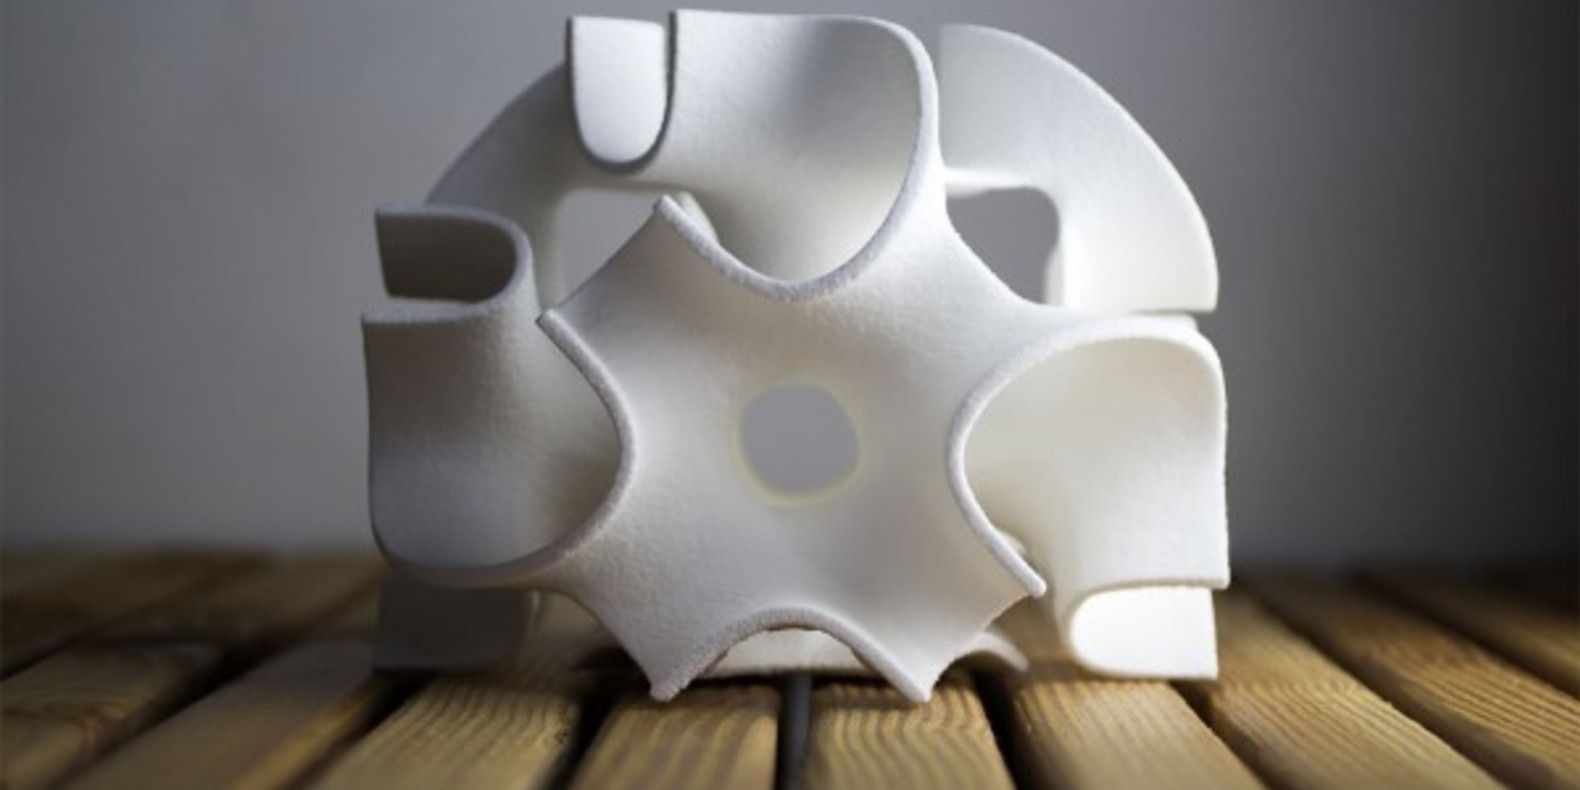 sculptures de sucre the sugar lab cults fichier 3D imprimante 3D patisserie cuisine 3D gateau